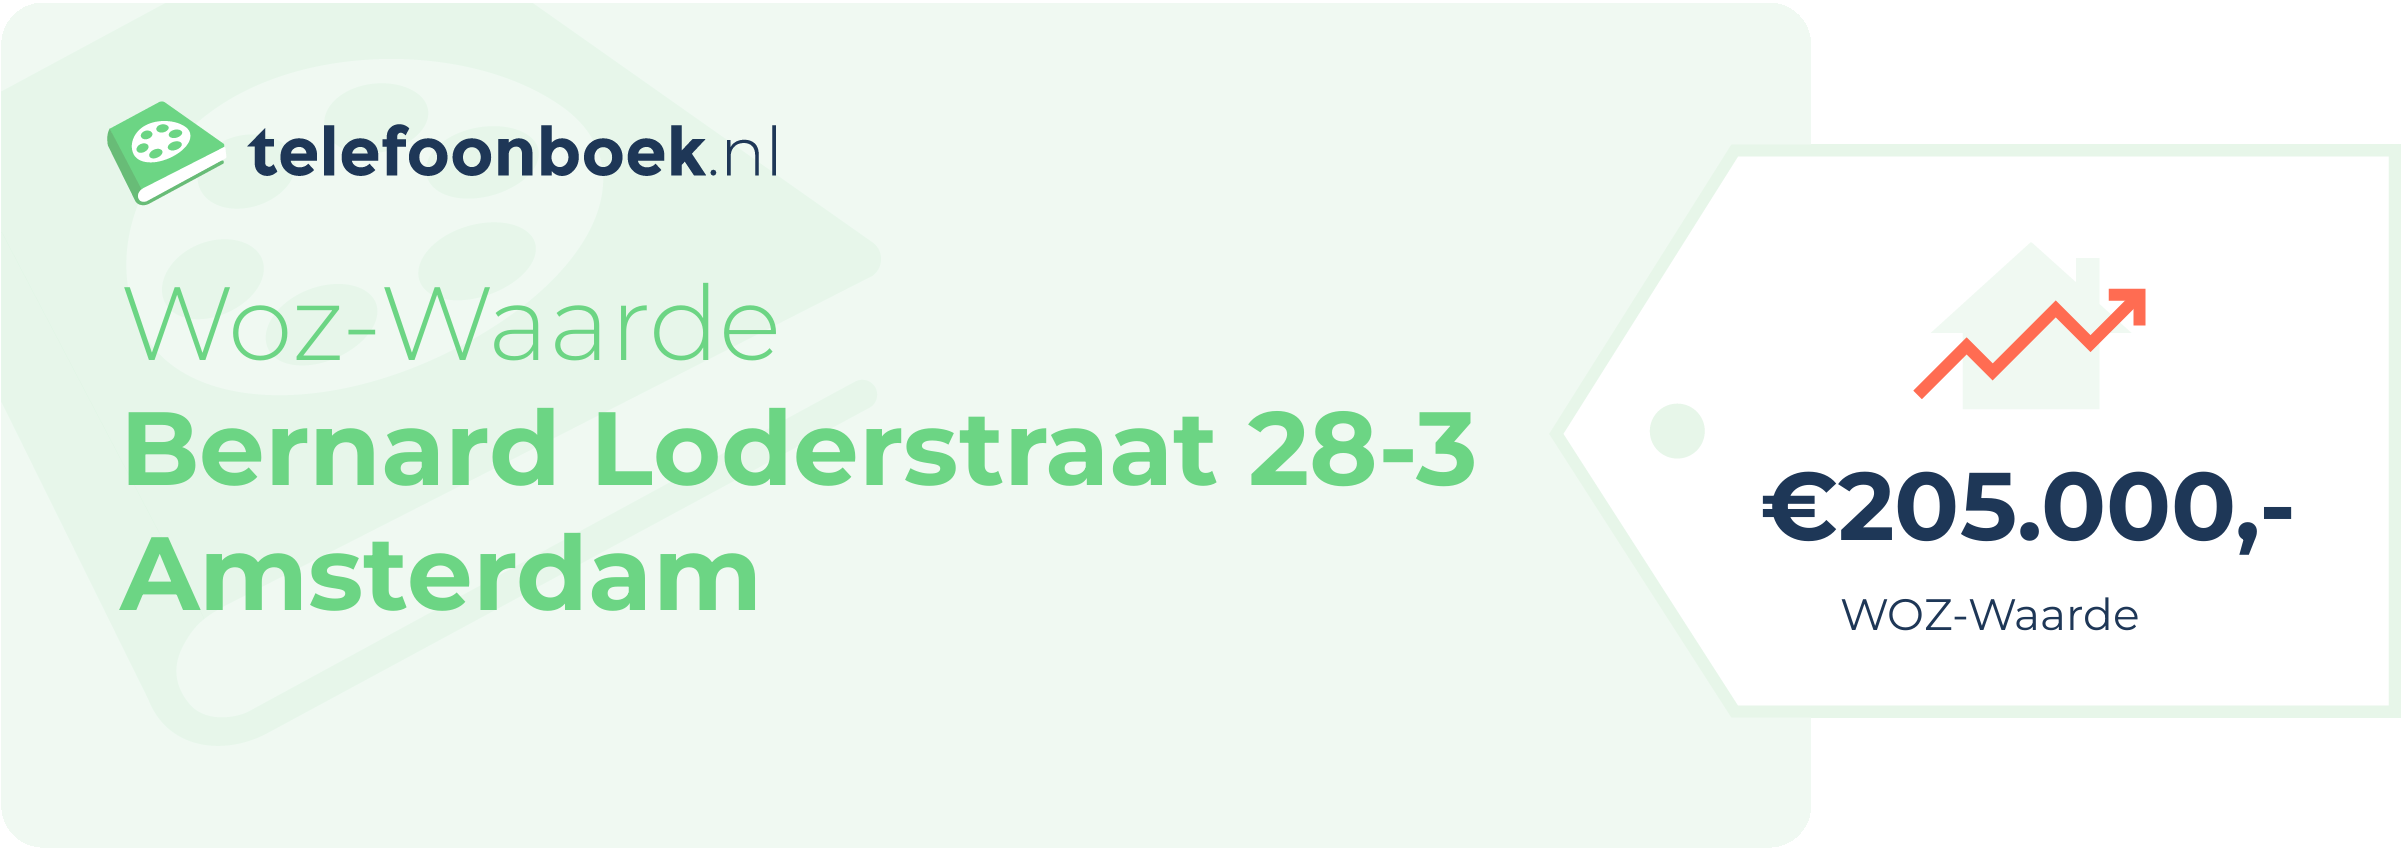 WOZ-waarde Bernard Loderstraat 28-3 Amsterdam